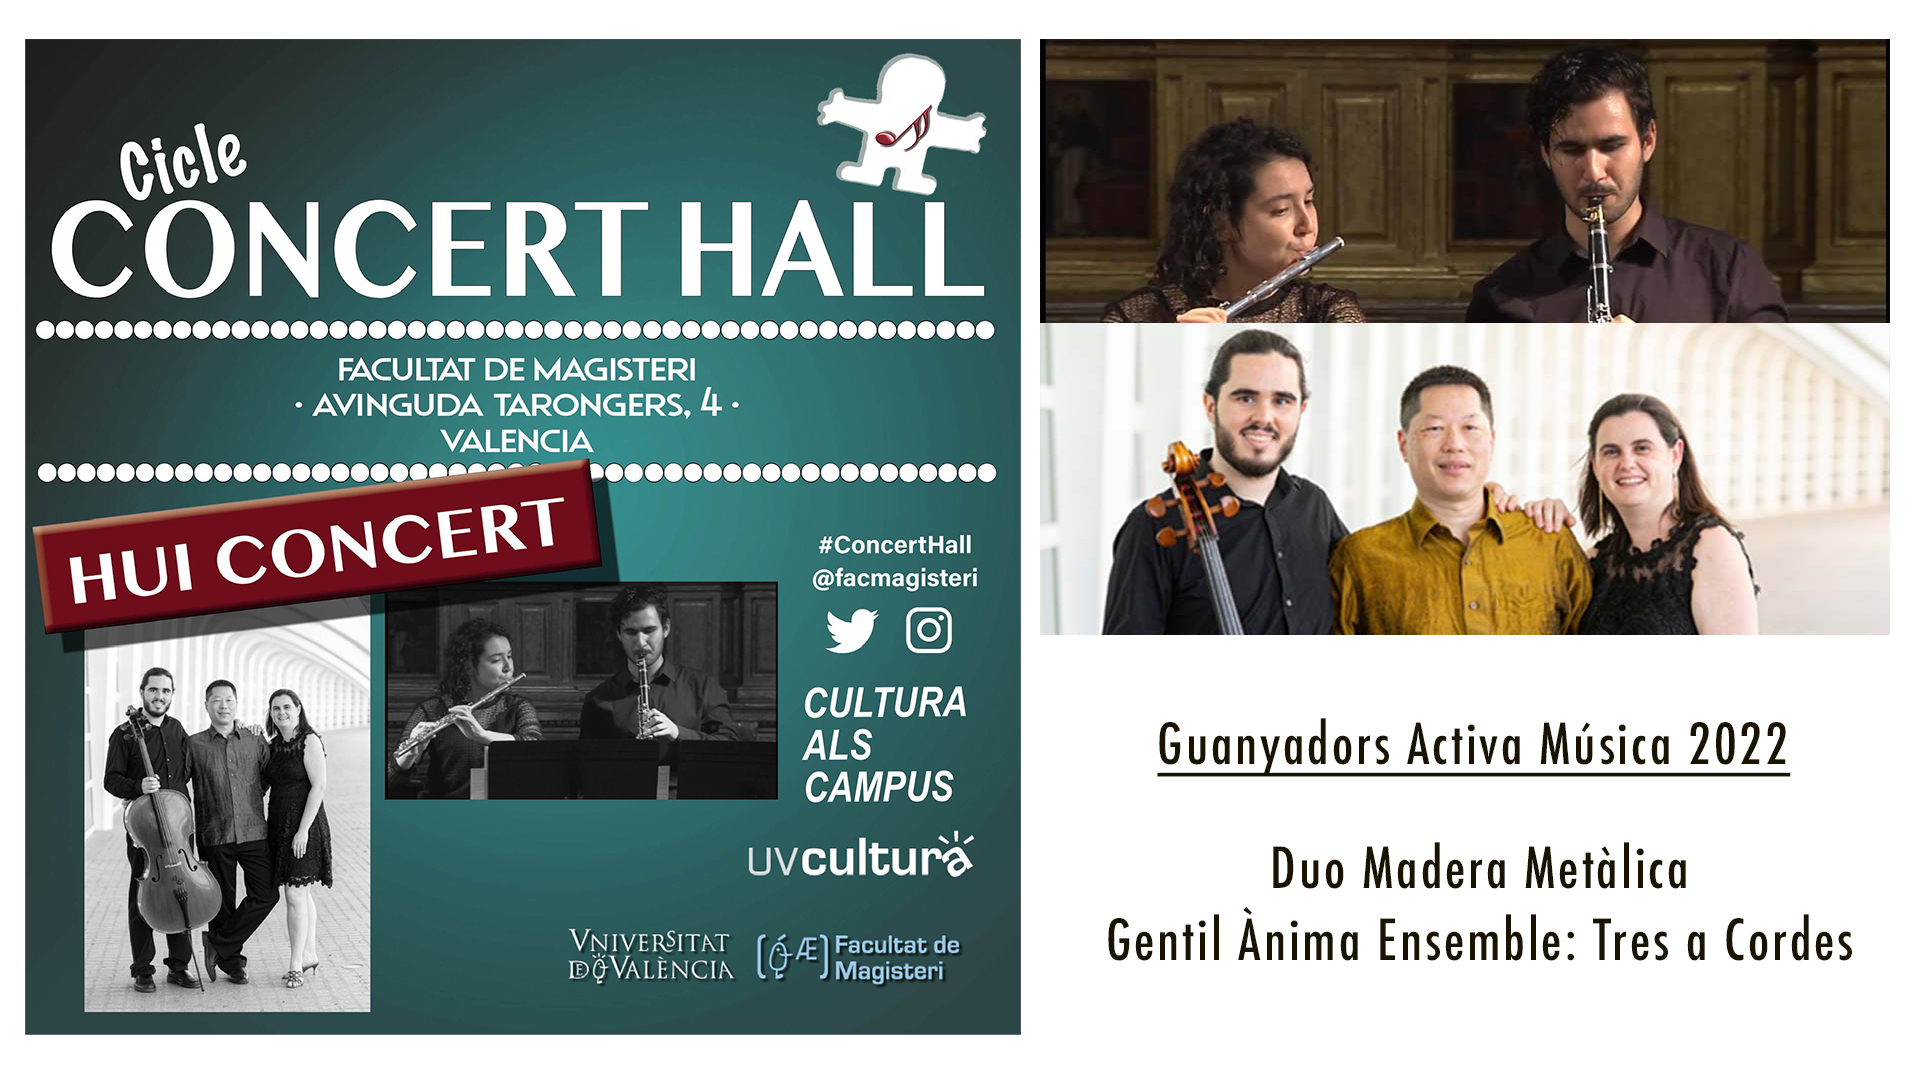 Concert Hall: Duo Madera Metàlica + Gentil Ánima Ensemble: Tres a Cordes